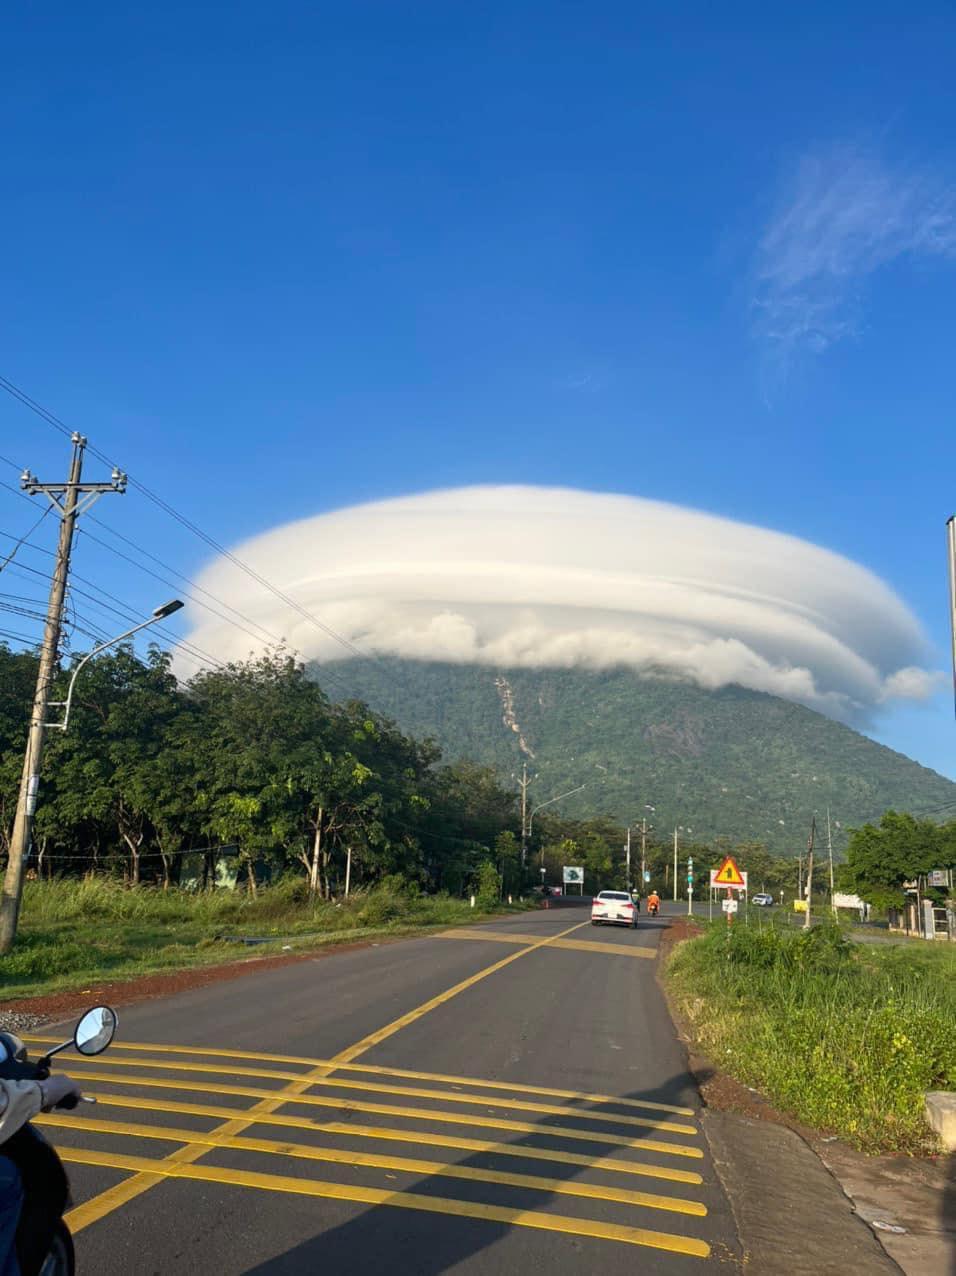 Núi Bà Đen hiện tượng tự nhiên: Núi Bà Đen chắc chắn là một trong những địa danh nổi tiếng của Việt Nam với những hiện tượng tự nhiên đặc biệt và thú vị. Hãy cùng khám phá hình ảnh tuyệt đẹp của đỉnh núi này và những câu chuyện kỳ thú xung quanh nó.